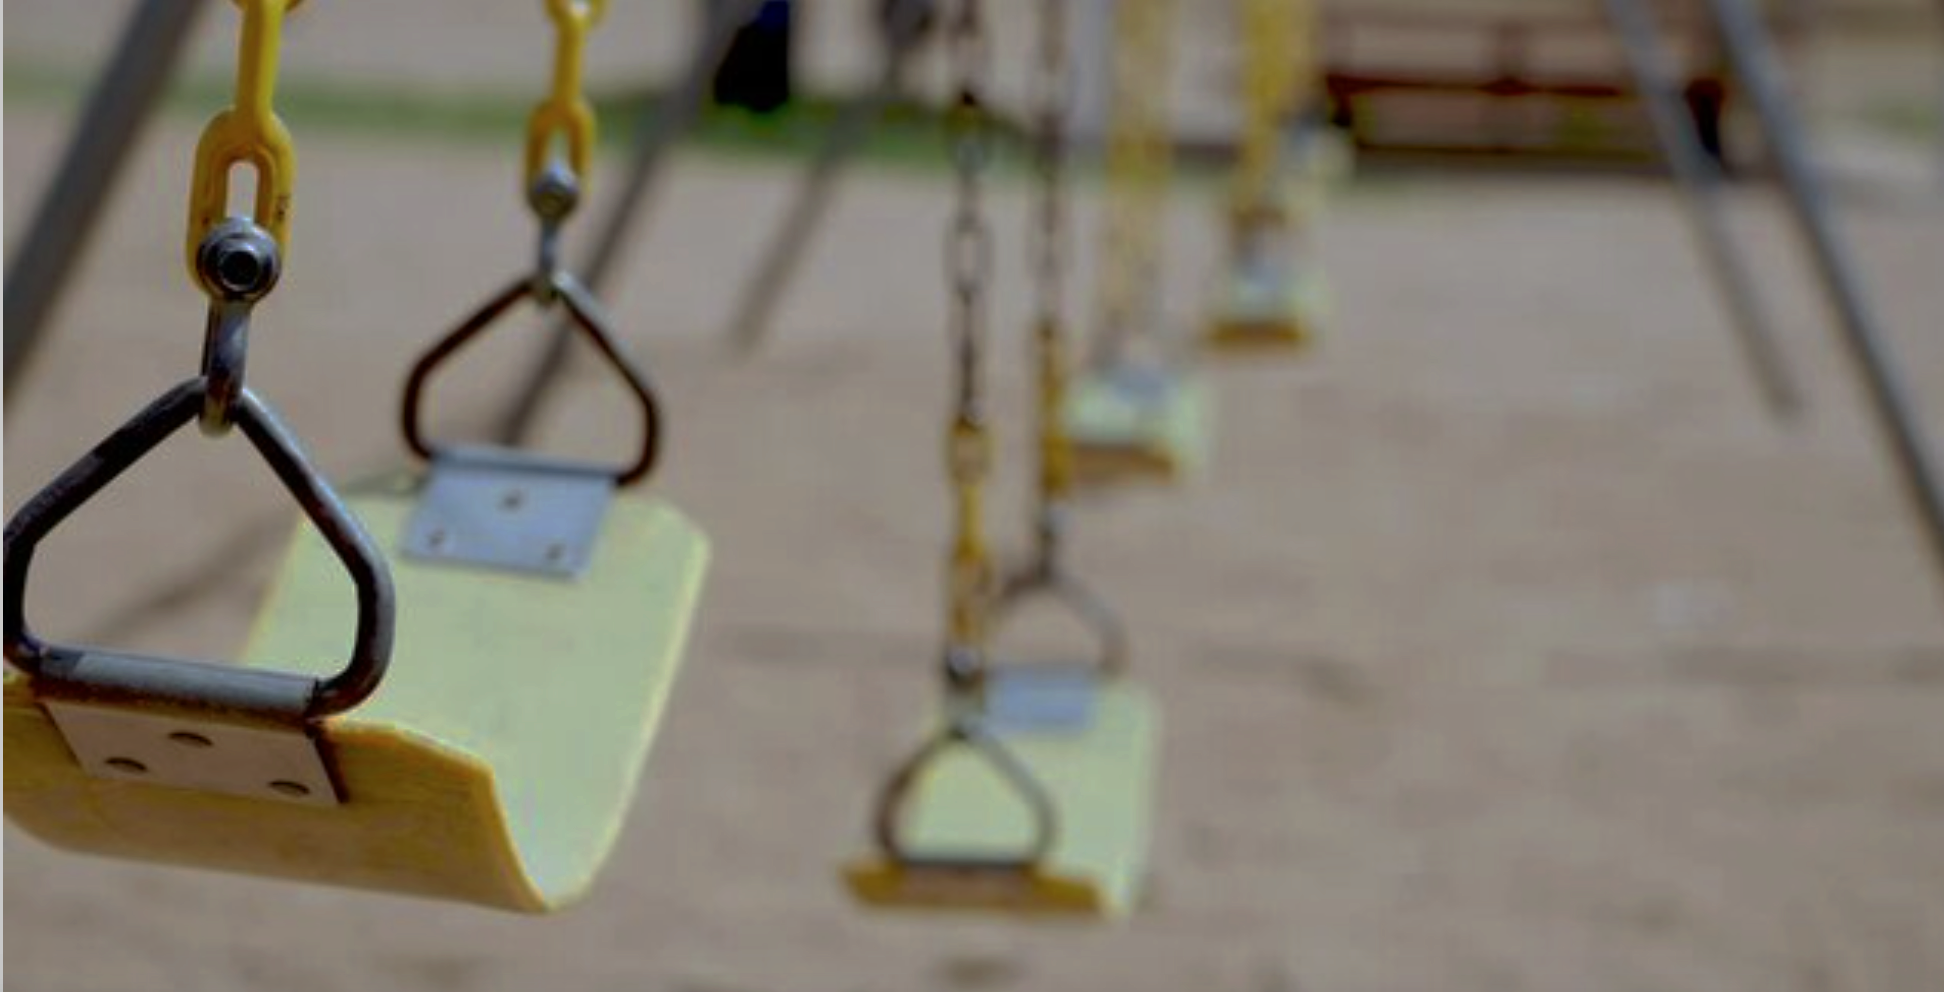 Empty swing set - no children - darkened